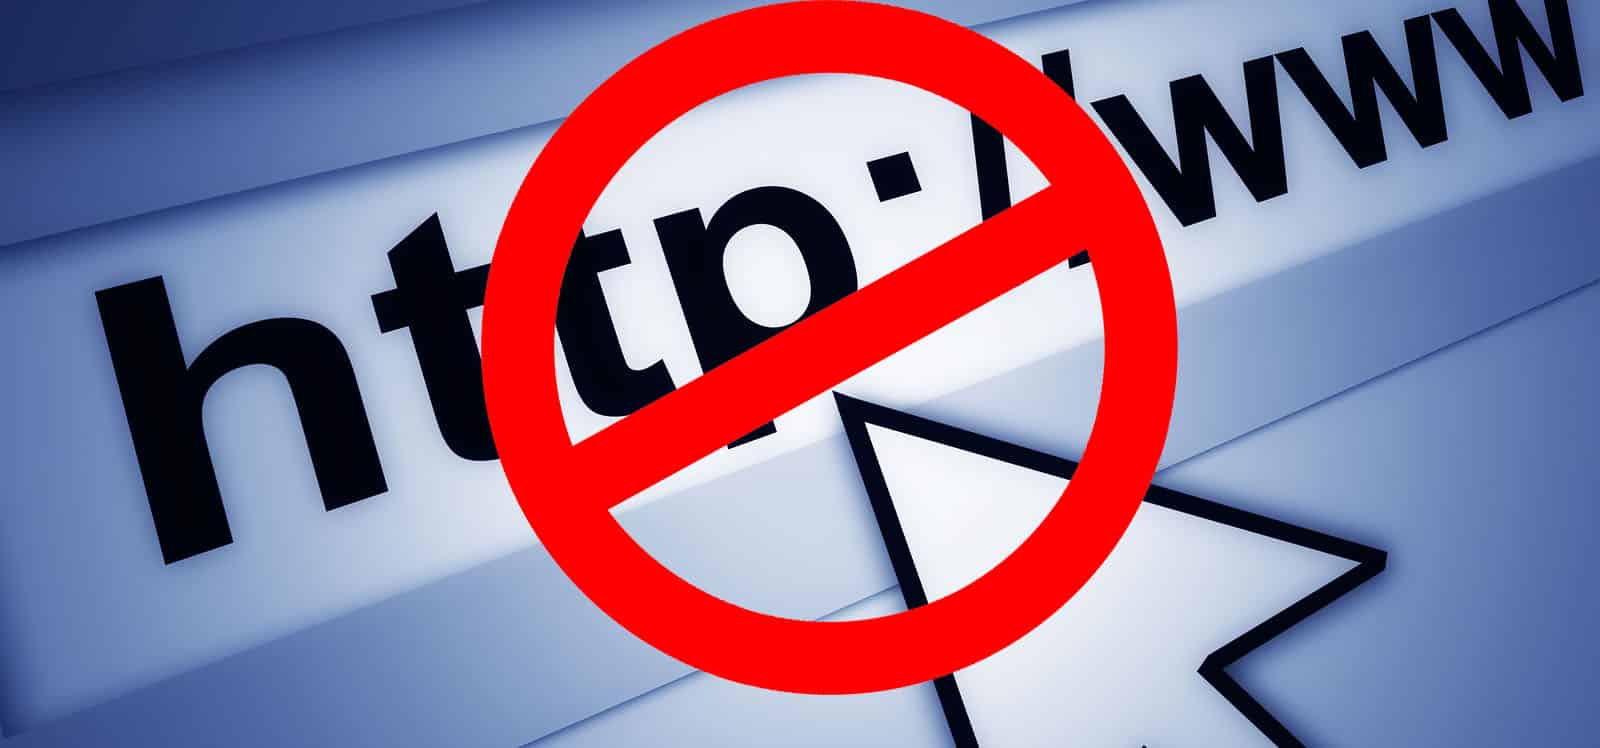 4 Cara Membuka Situs yang Diblokir Tanpa Aplikasi dan VPN